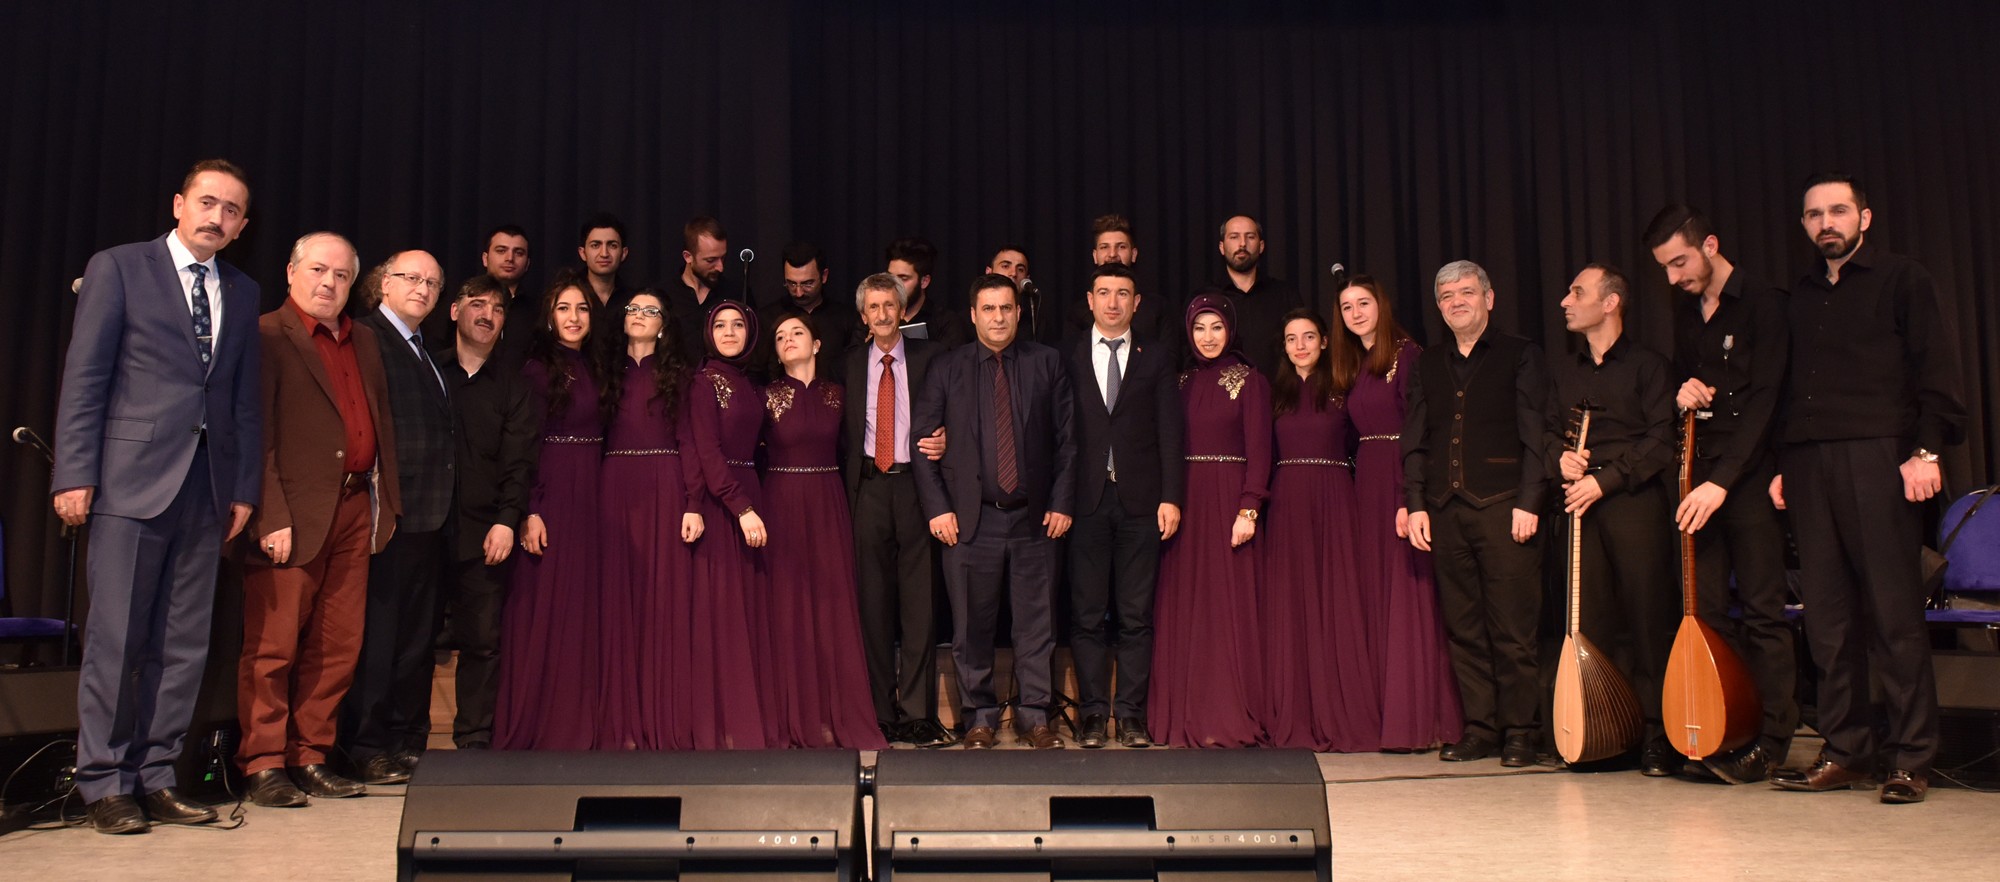 Büyükşehir Belediyesi Türk Halk Müziği Korosu, kahramanlık türkülerini seslendirdi